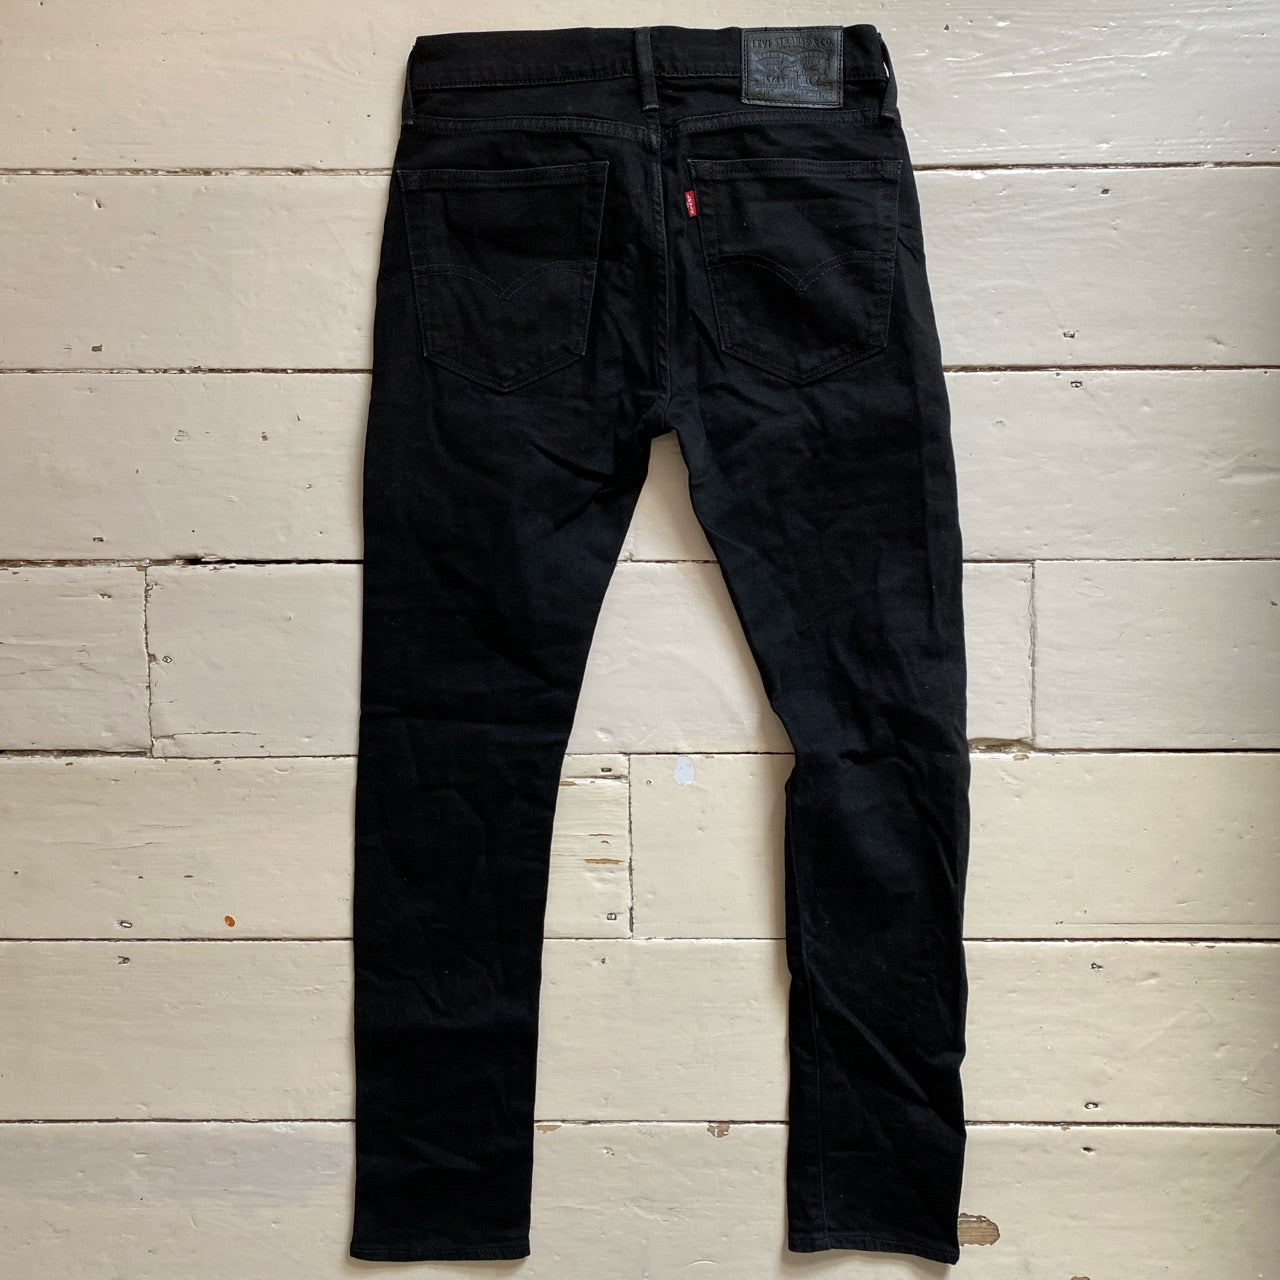 Levis 519 Slim Fit Jeans (30/30)